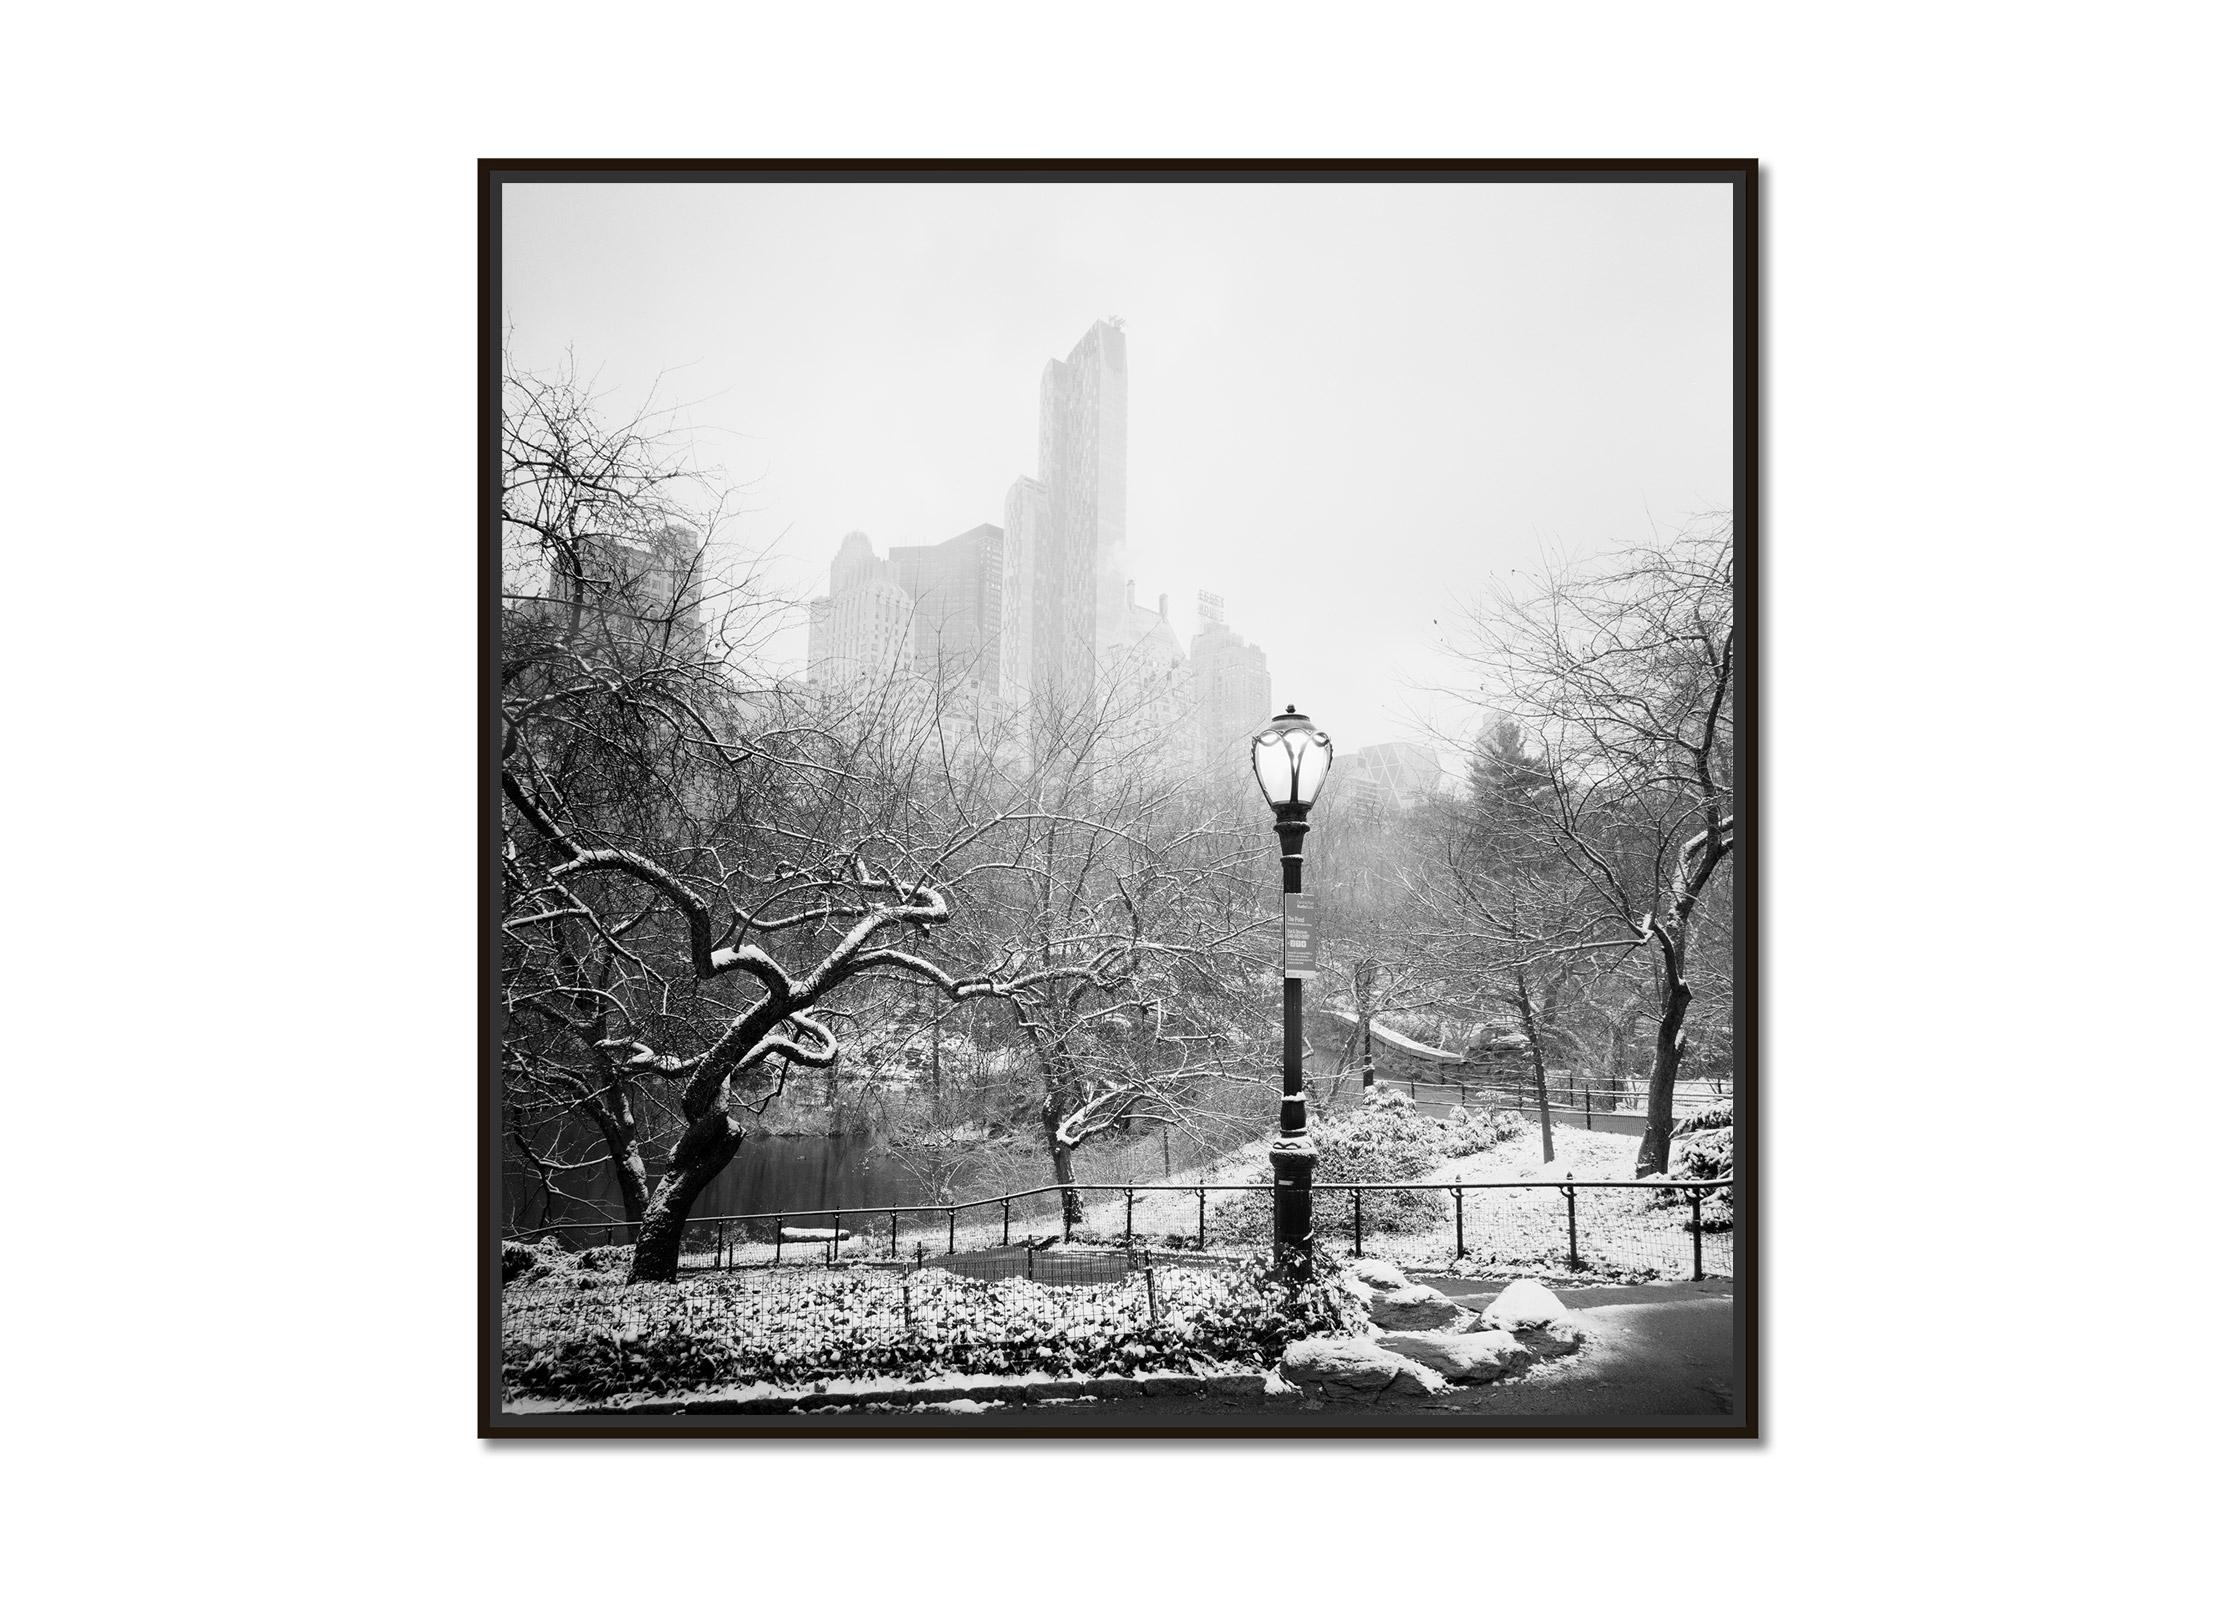 Schnee bedeckter Central Park, New York City, Schwarz-Weiß-Fotografie, Landschaft – Photograph von Gerald Berghammer